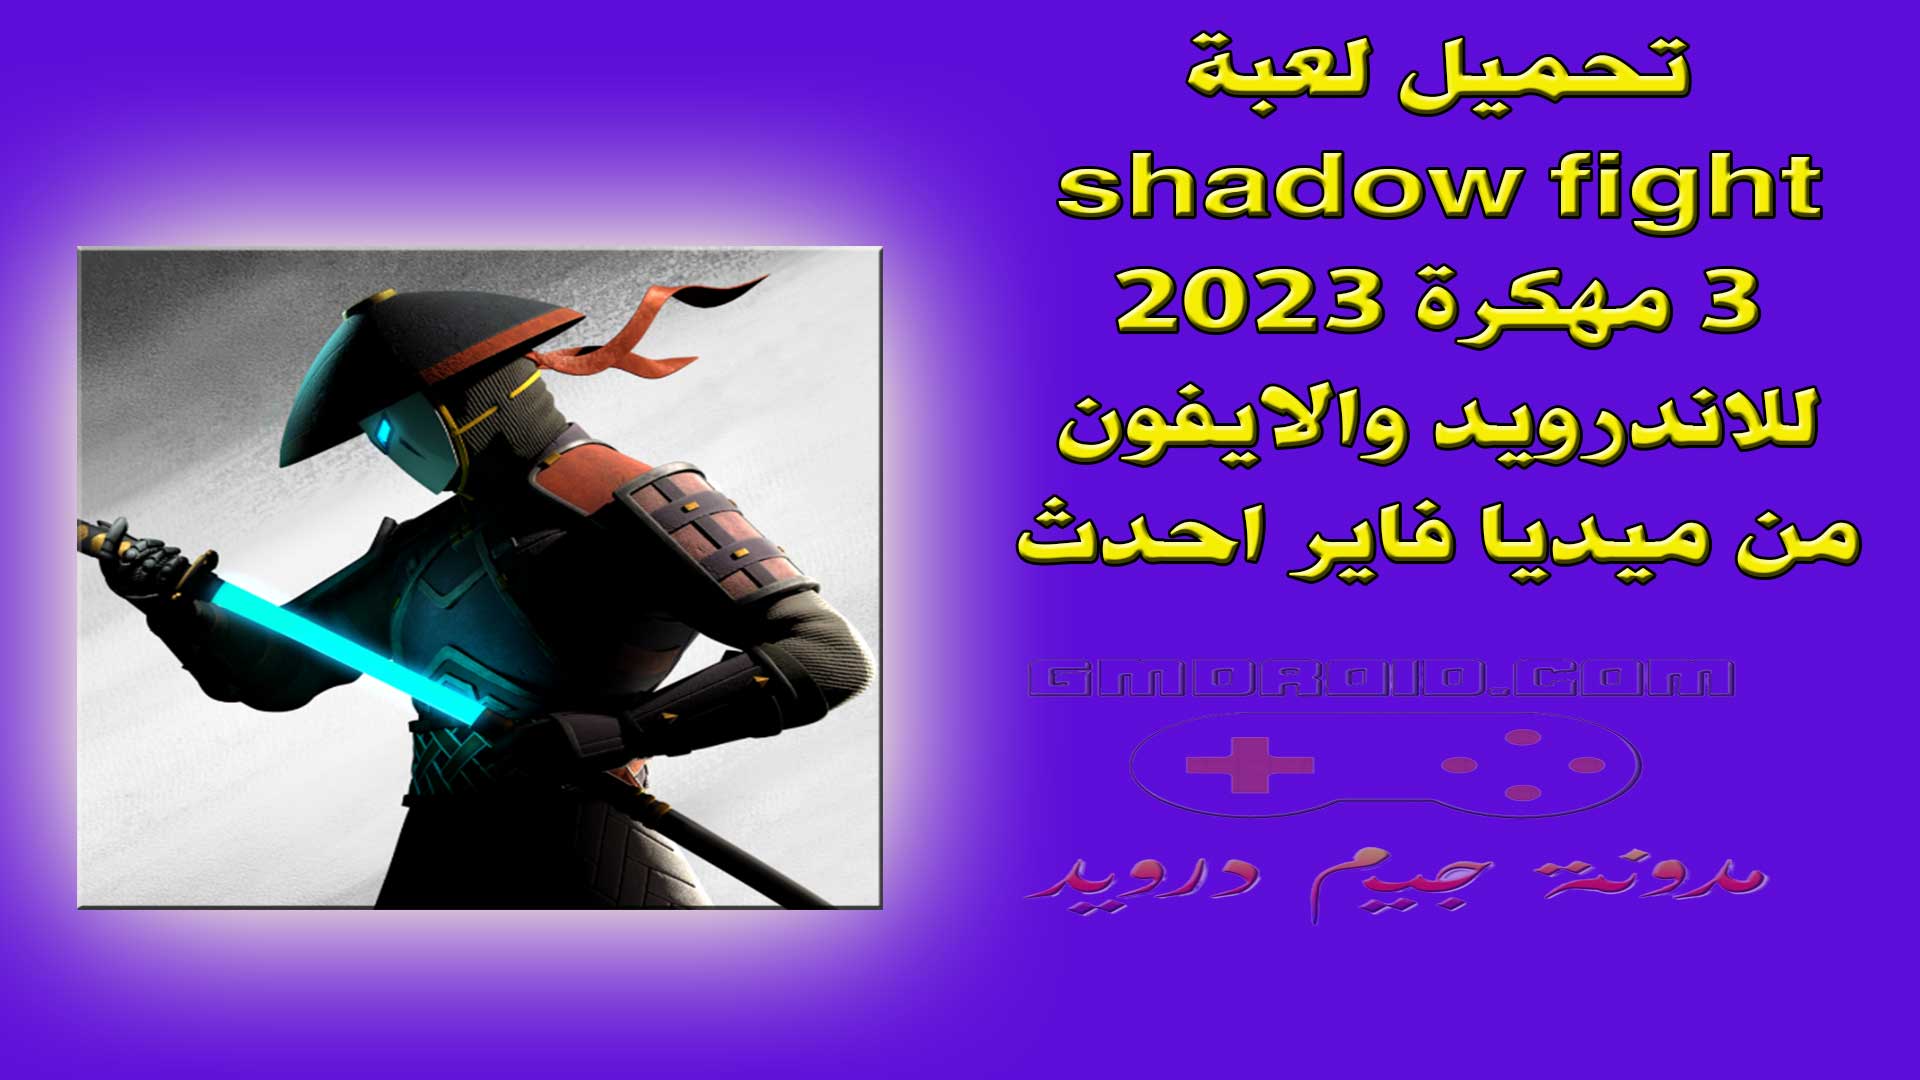 تحميل لعبة shadow fight 3 مهكرة 2023 للاندرويد والايفون من ميديا فاير احدث اصدار